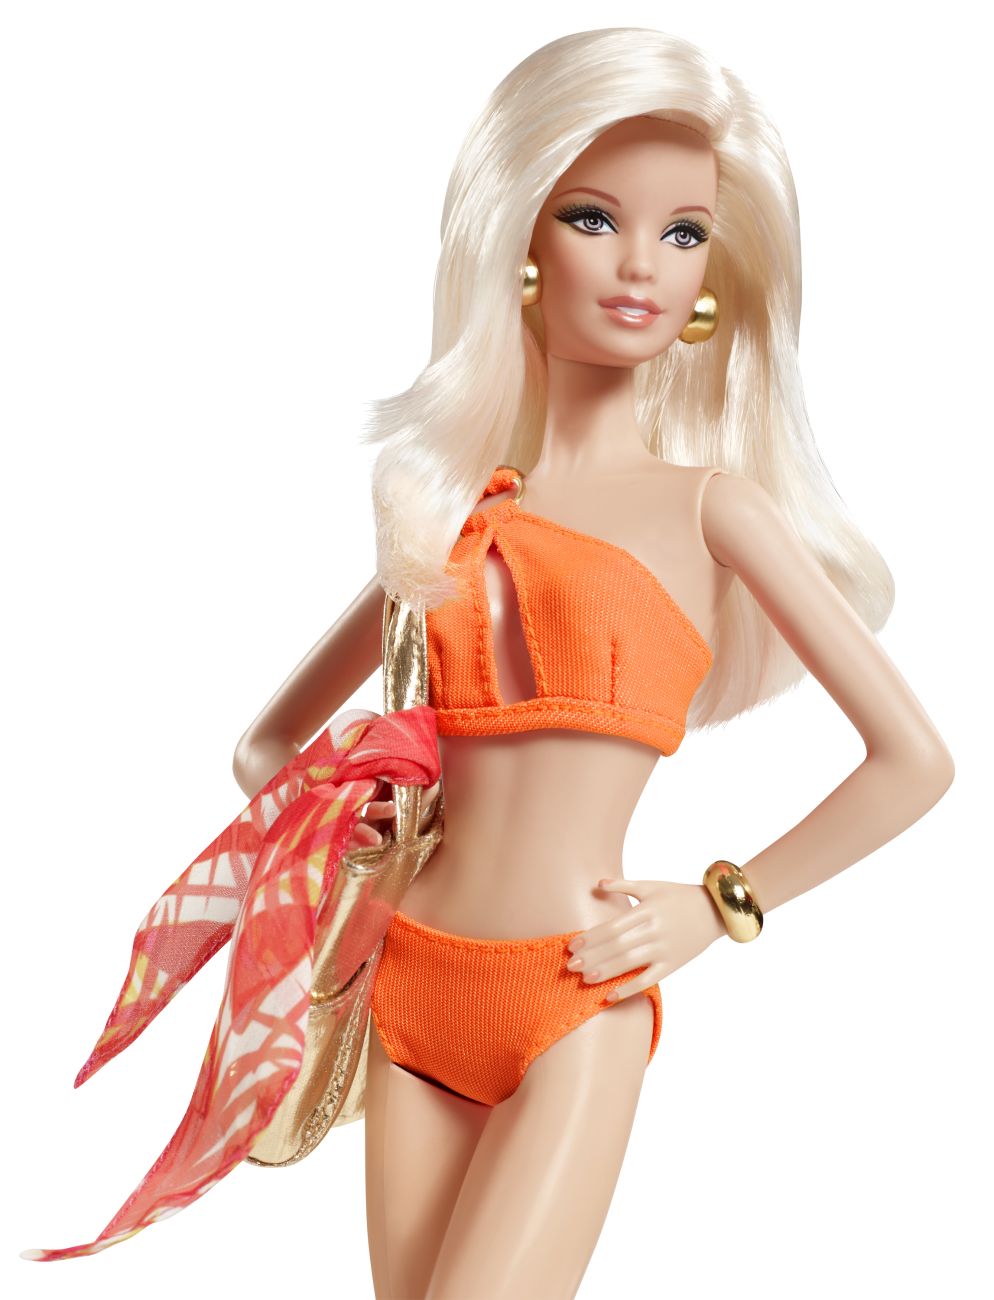 Куклы в интернете купить недорого. Кукла Барби 3hf2. Barbie Basics collection 003. Куклы Барби Бейсик купальники. Barbie Basics model no. 14 — collection 003.